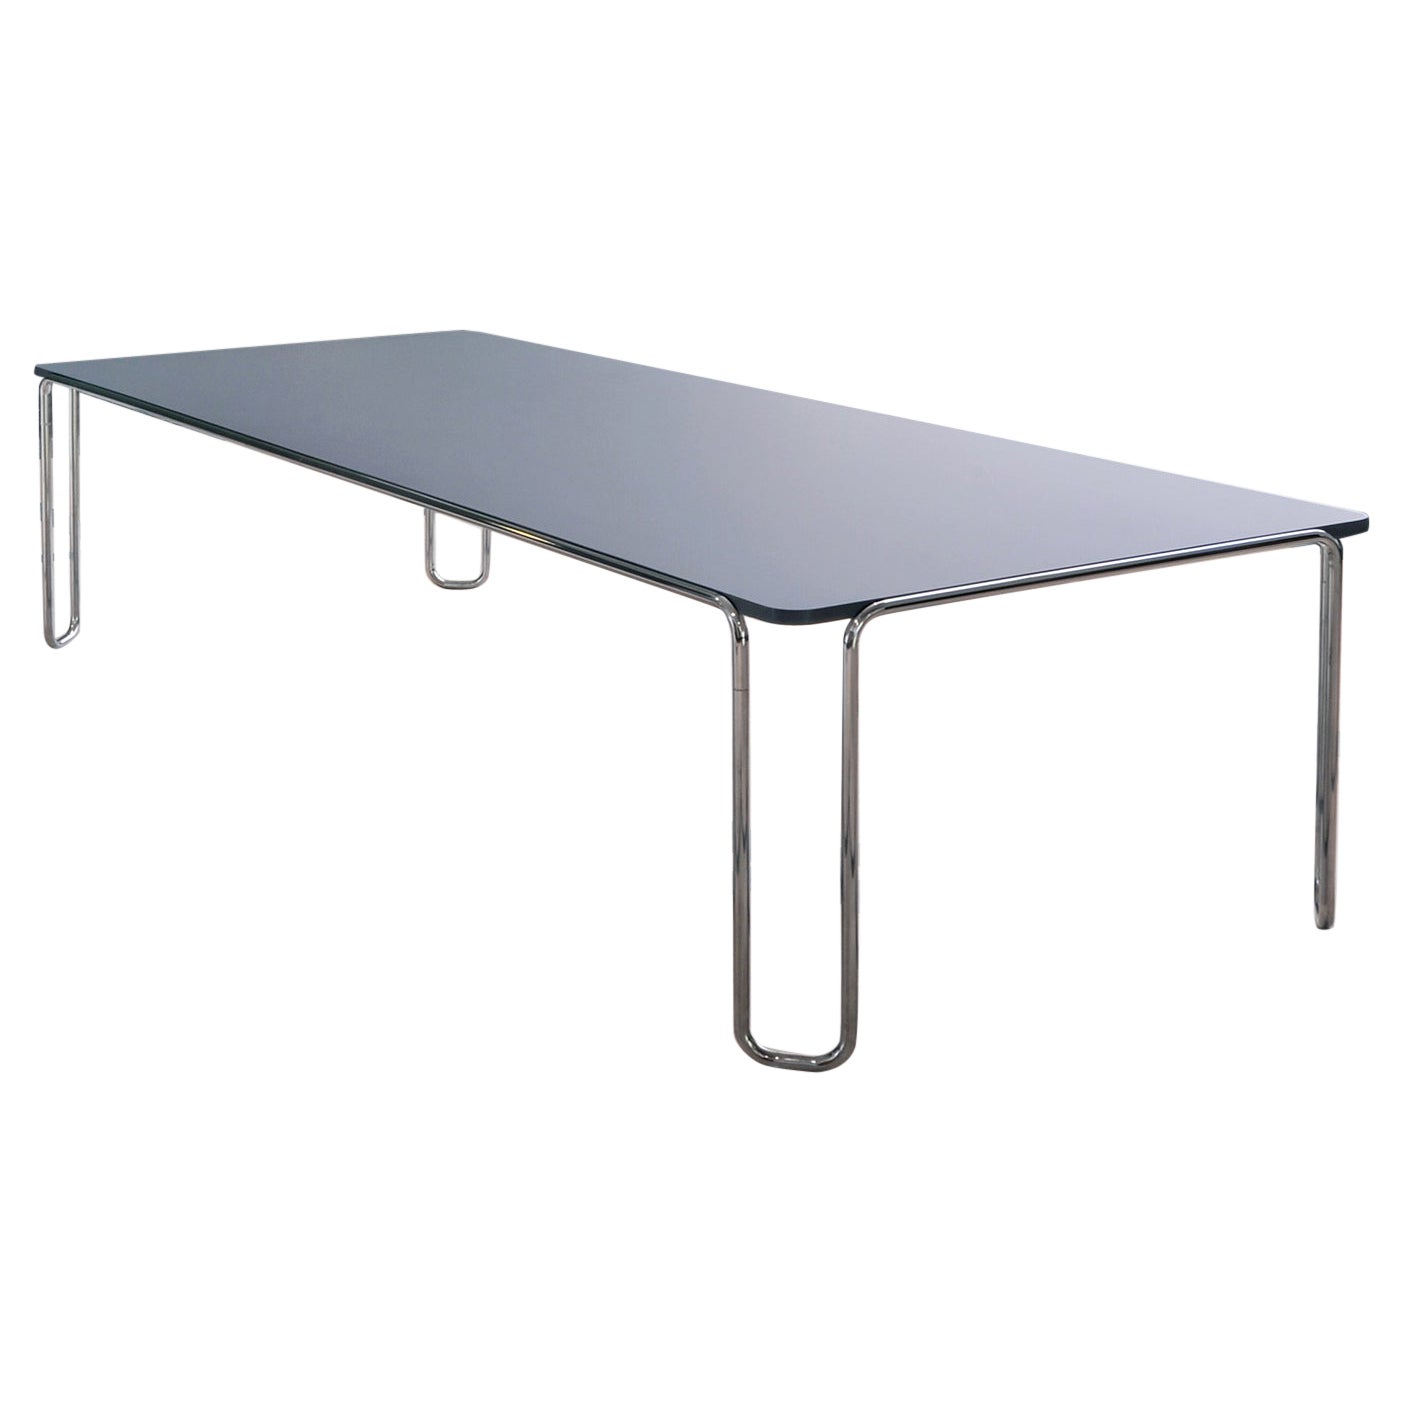 Großer modernistischer Ultra-Thin-Tisch mit röhrenförmigem Sockel von GMD Berlin, Sonderanfertigung